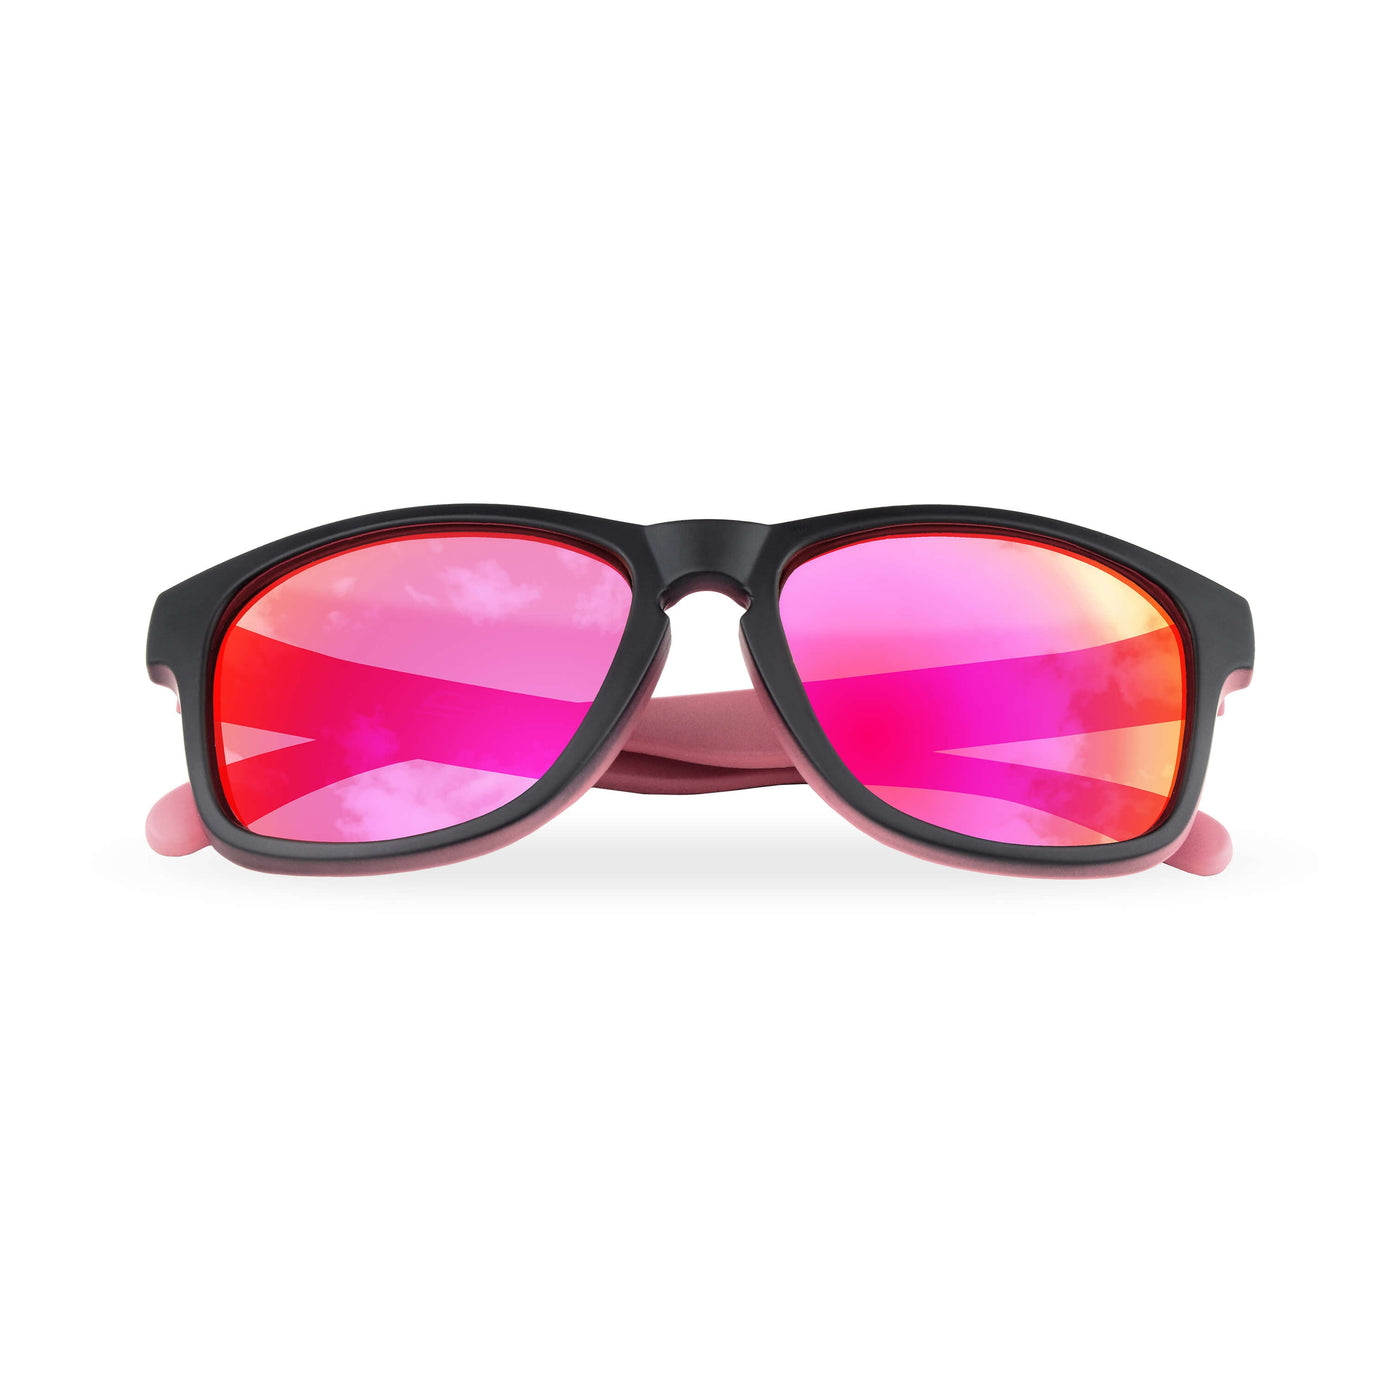 UV Protection Glasses & Sunglasses Online NZ | Framesbuy